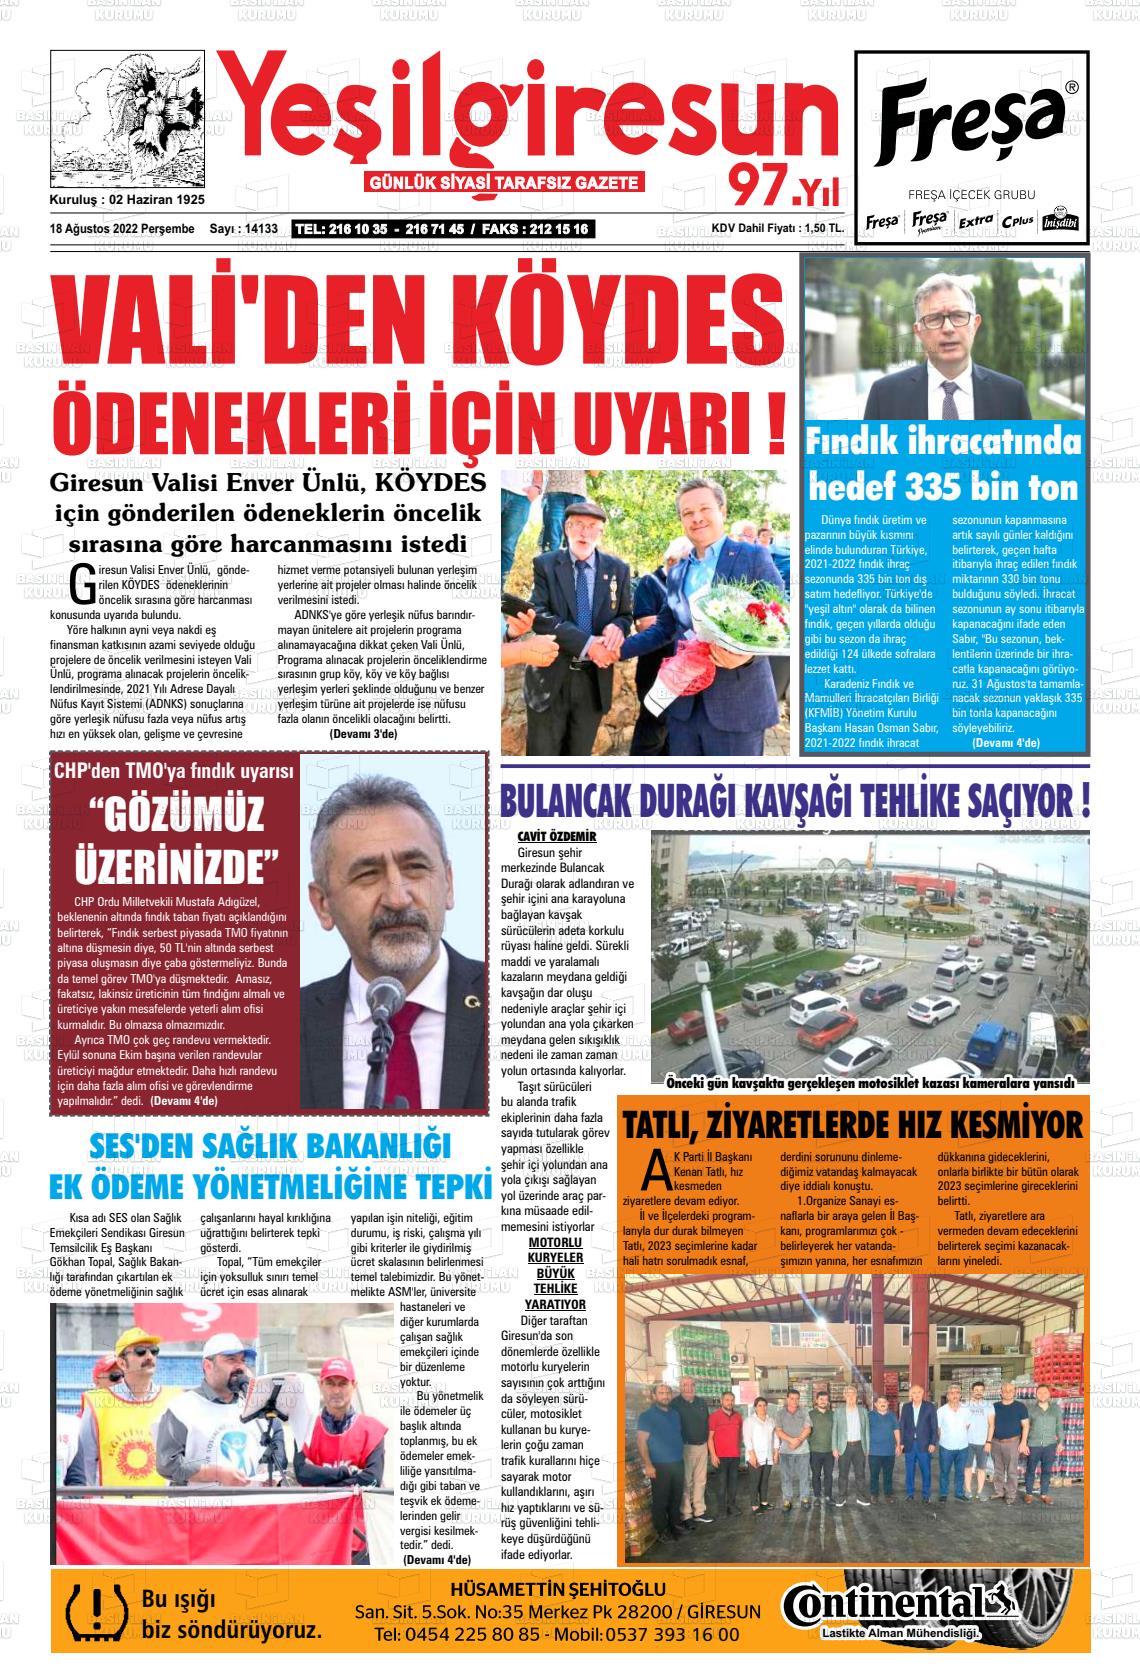 18 Ağustos 2022 Yeşil Giresun Gazete Manşeti